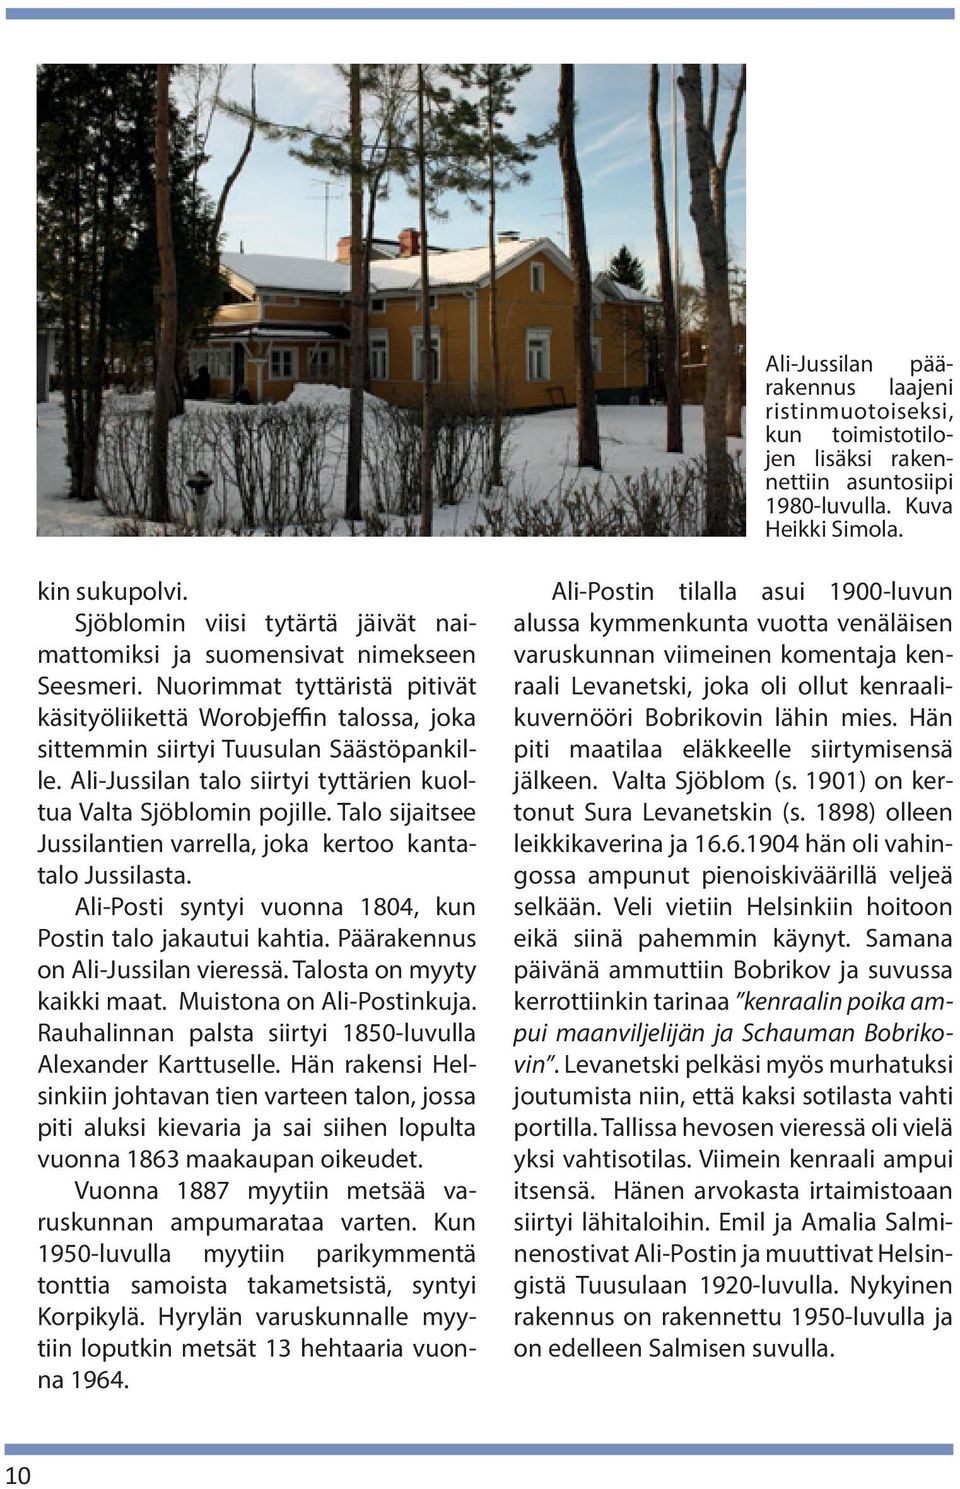 Ali-Jussilan talo siirtyi tyttärien kuoltua Valta Sjöblomin pojille. Talo sijaitsee Jussilantien varrella, joka kertoo kantatalo Jussilasta.